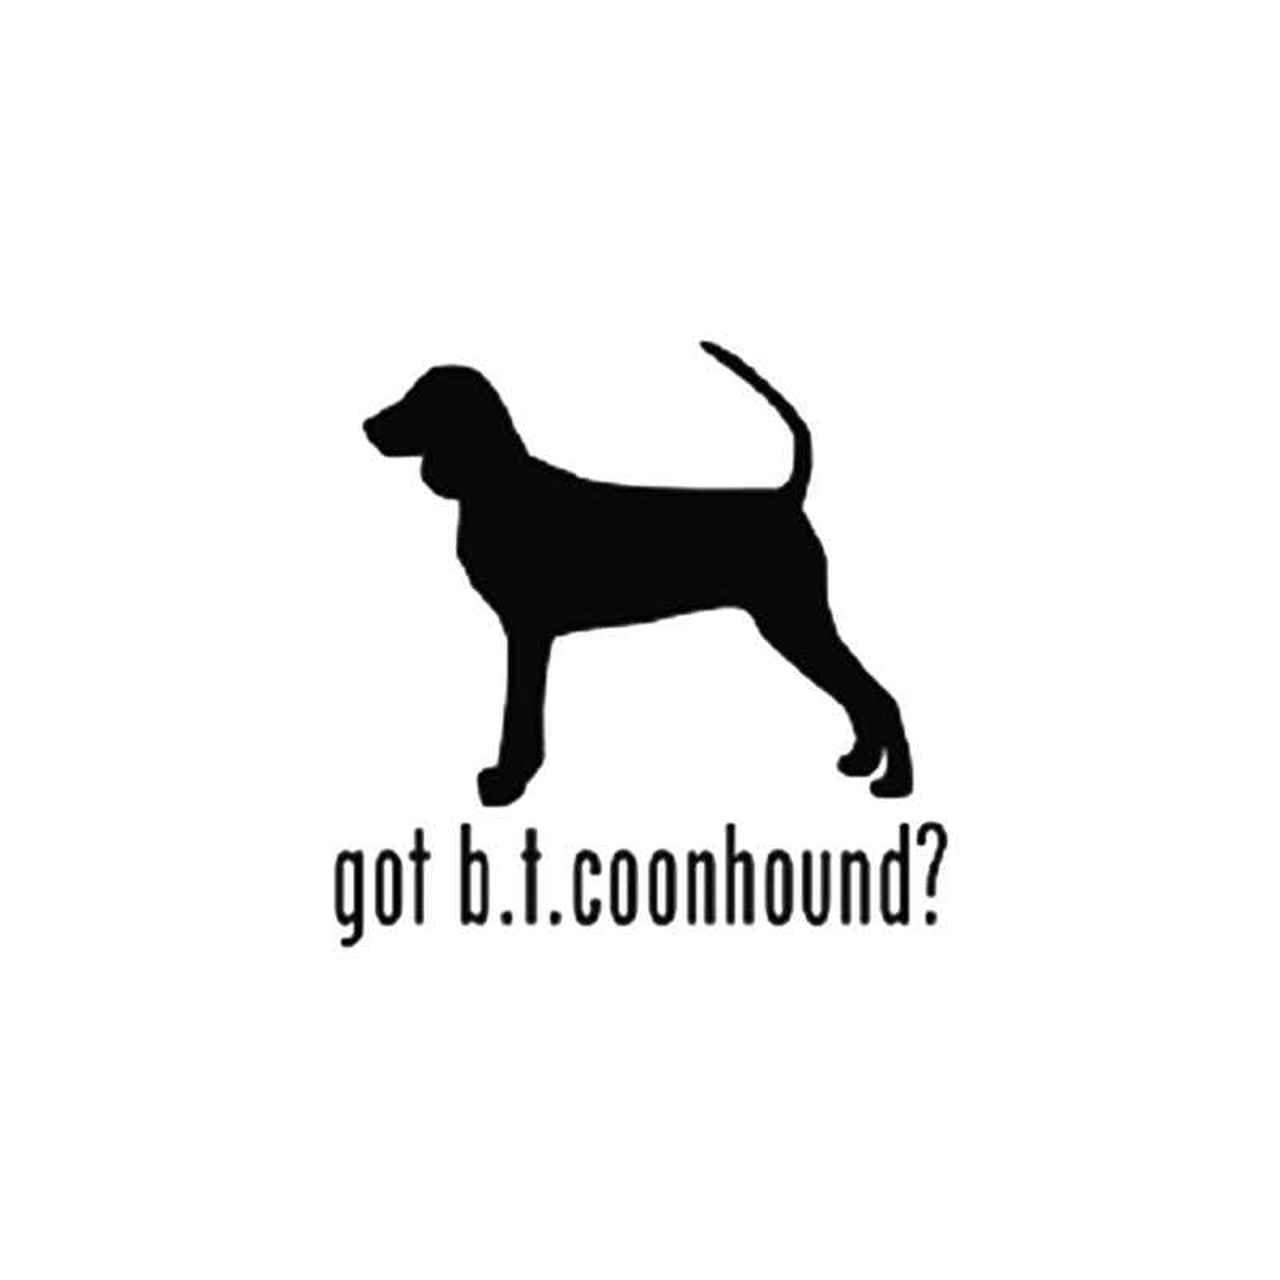 Coonhound Logo - Got Black Tan Coonhound Dog Vinyl Sticker